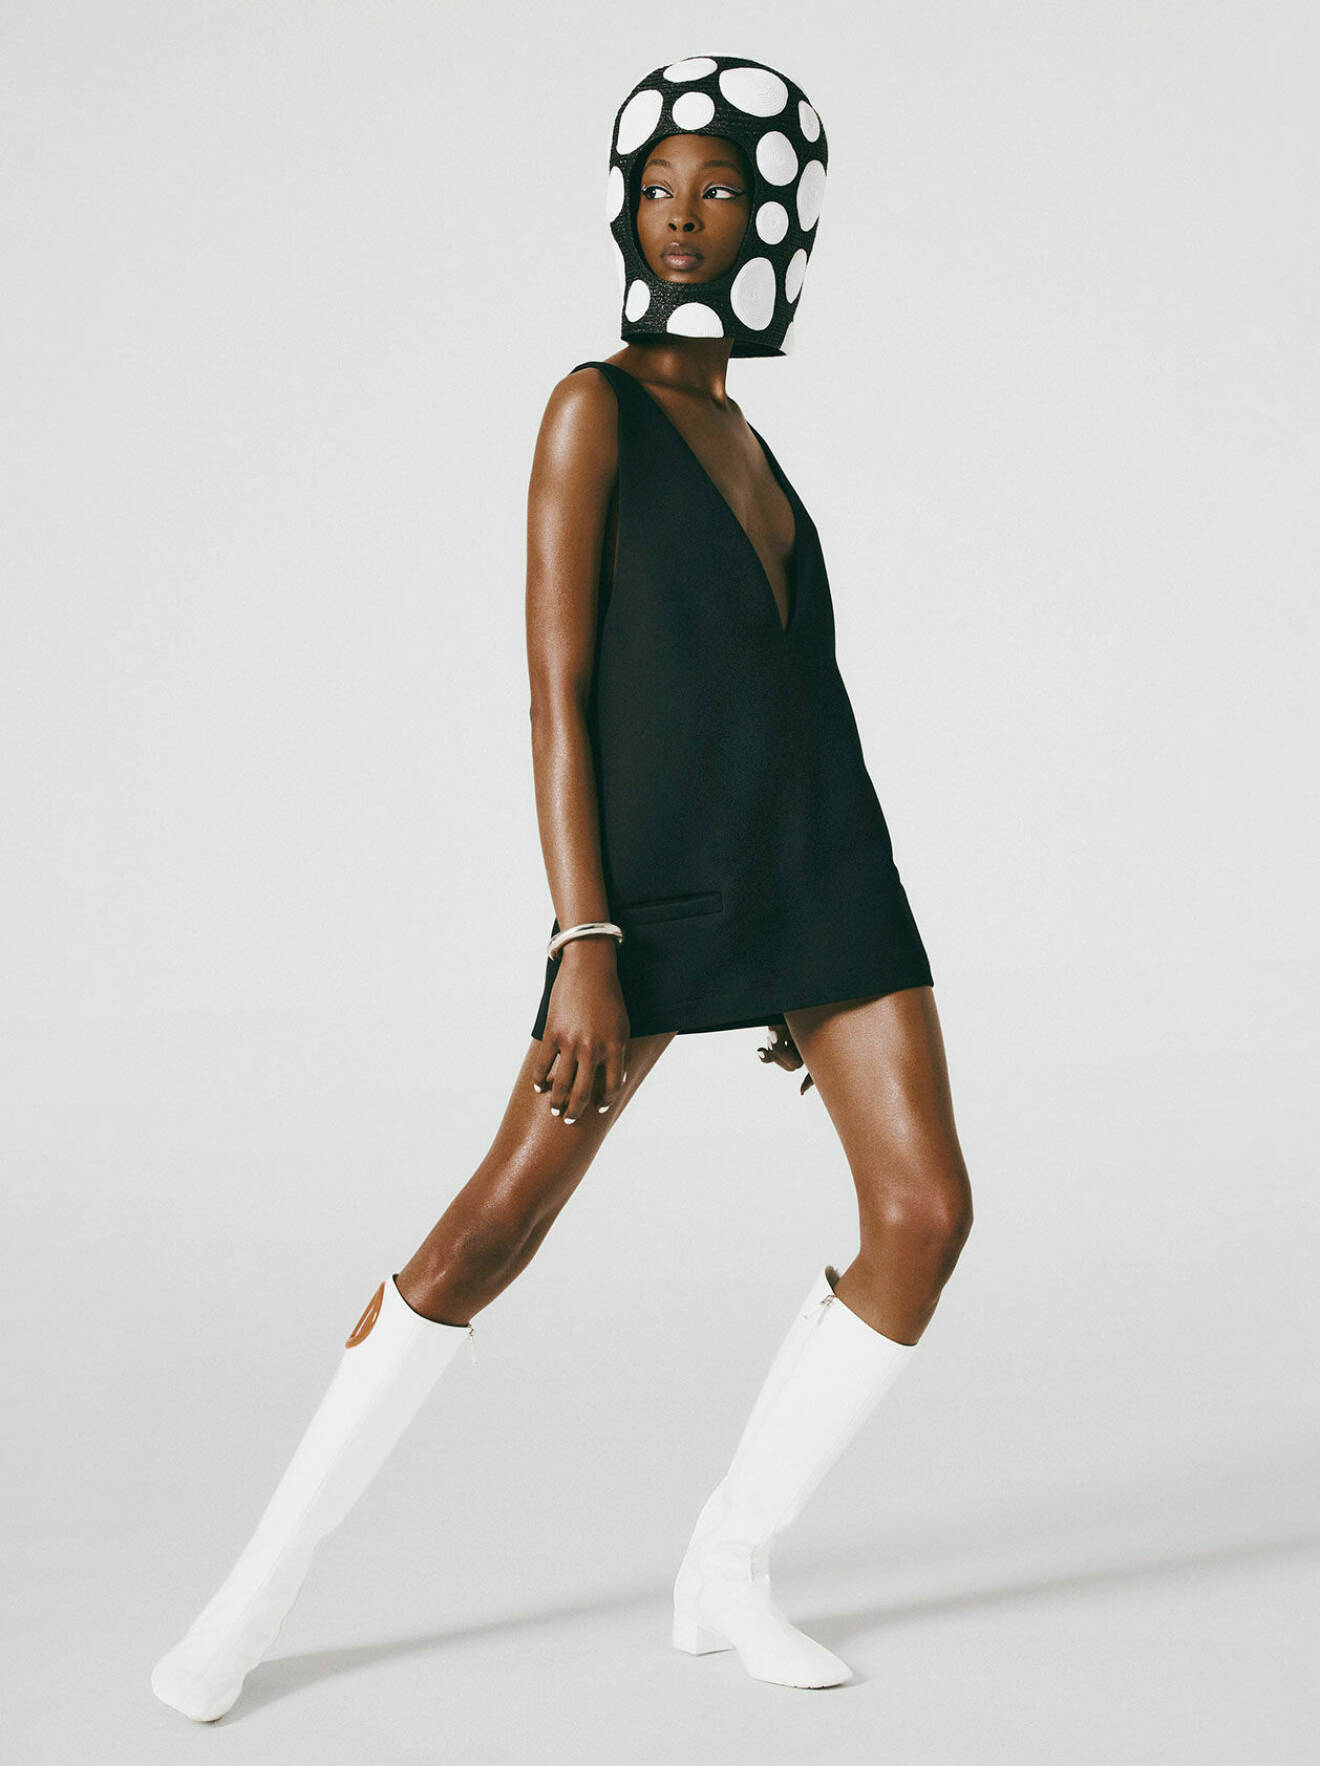 Modellen bär en svart klänning och vita boots, båda från Dior, tillsammans med en svart hjälm med vita prickar från Eric Javits